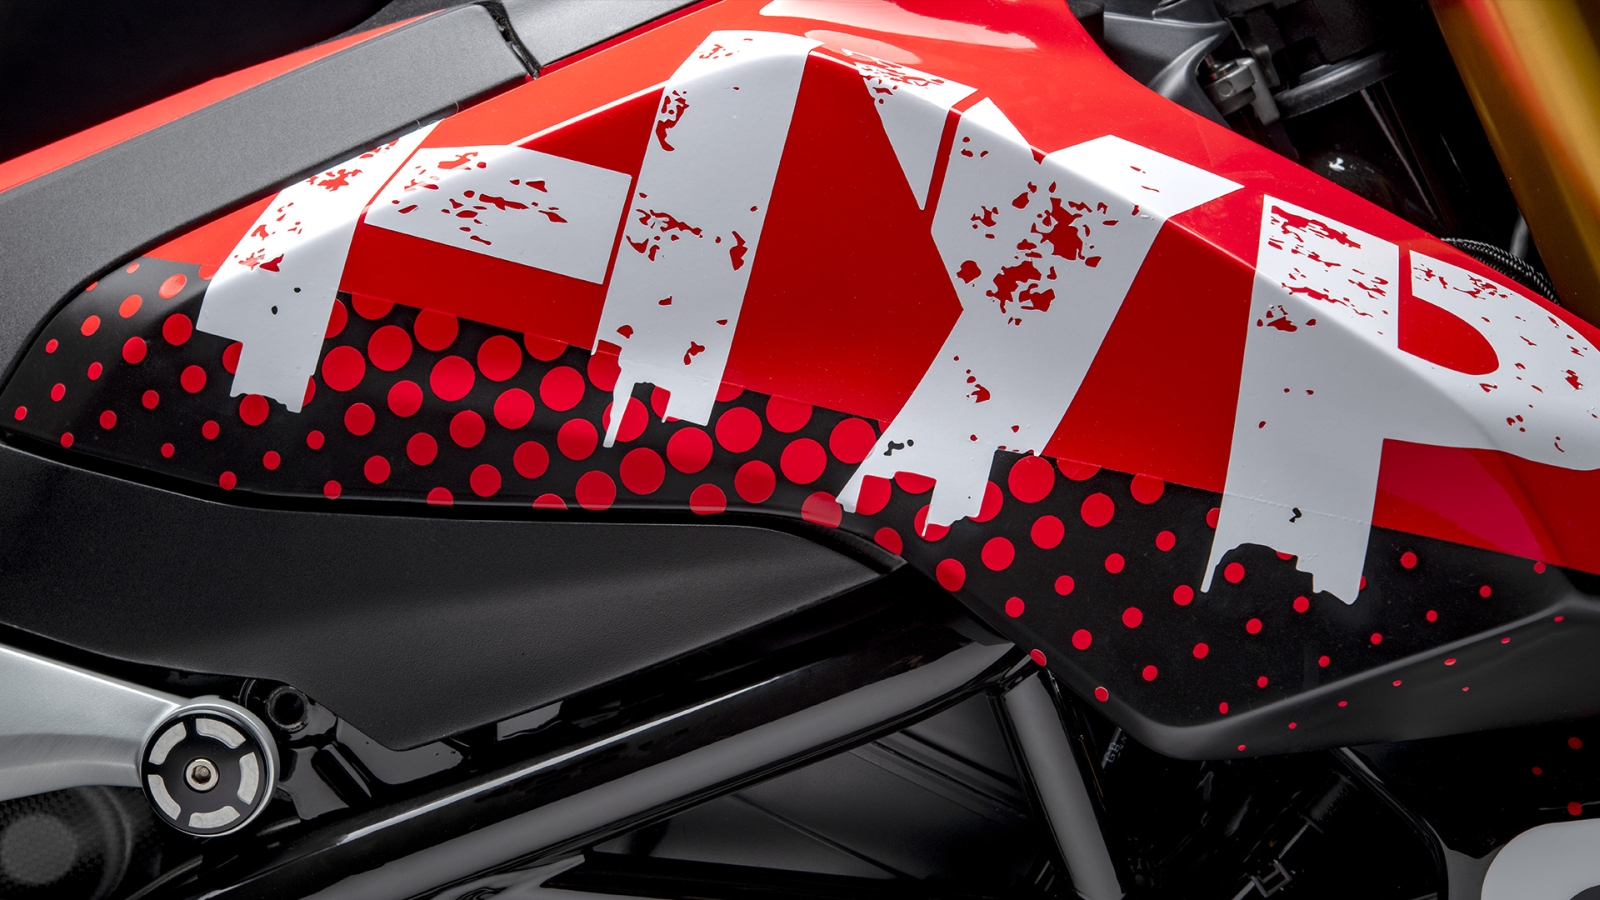 Ducati Hypermotard 950 Concept